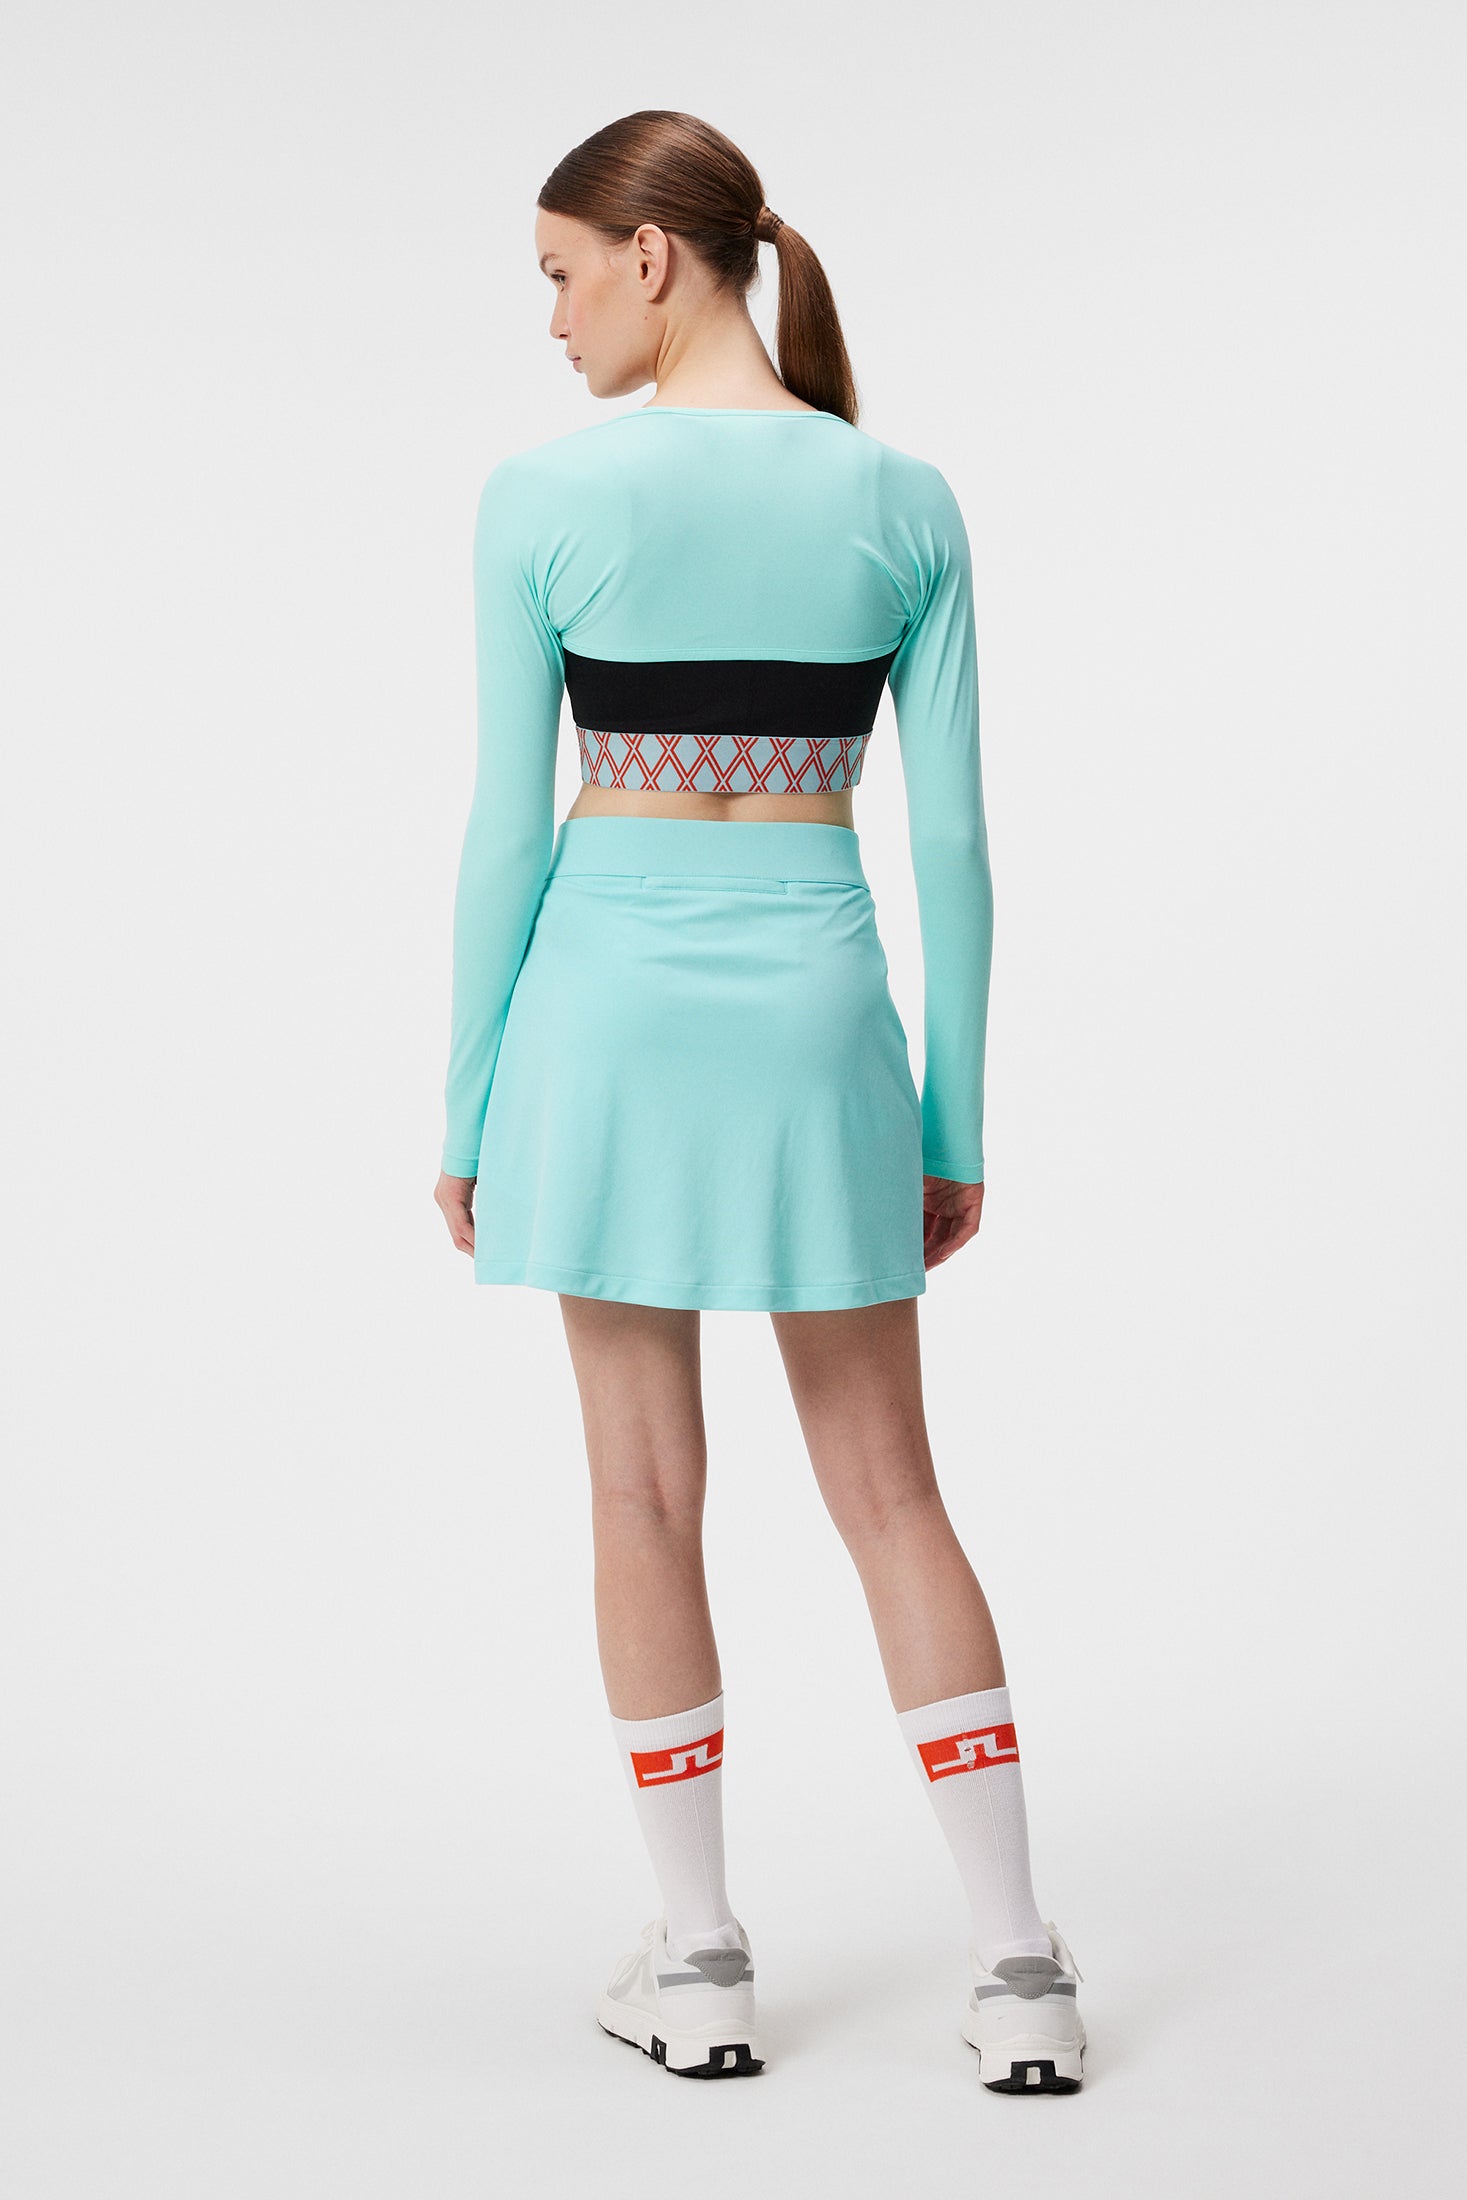 Thea Skirt